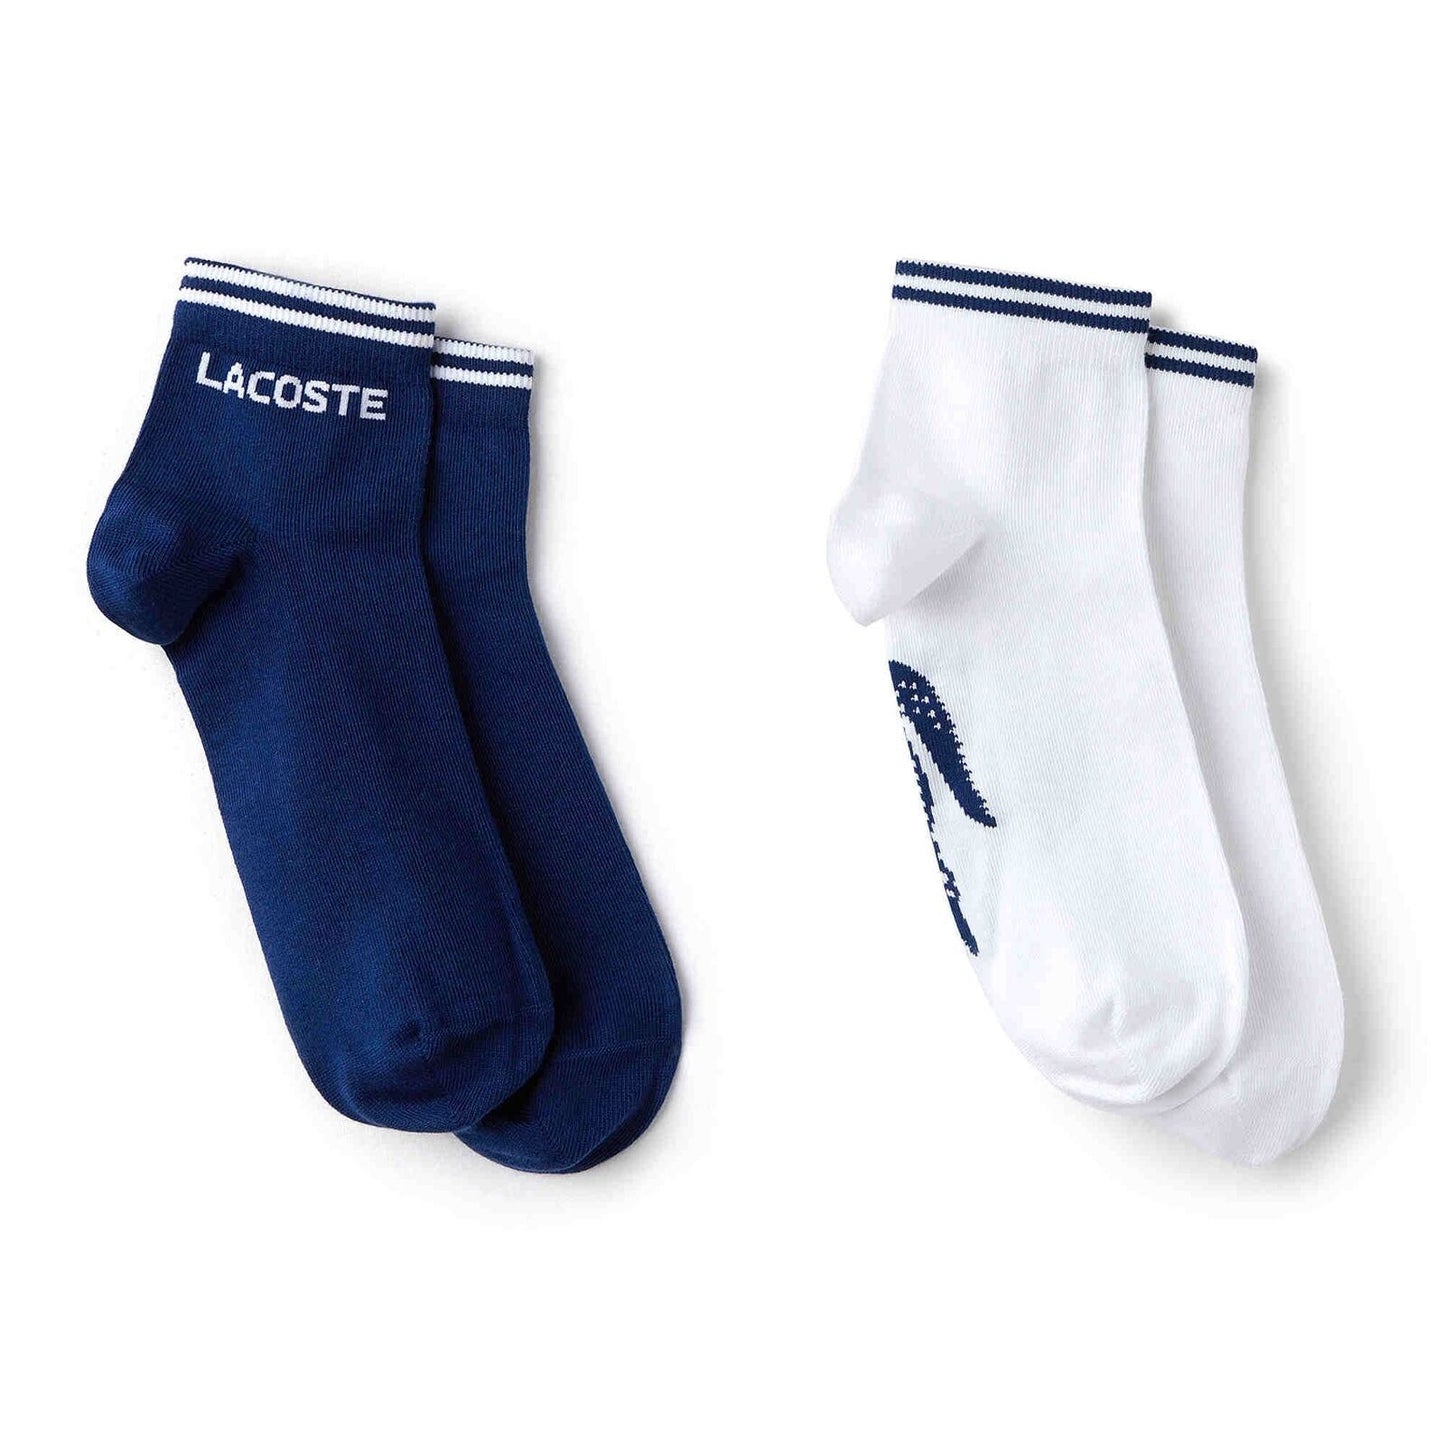 Lacoste Mens Low Cut Ankle Fashion Sport Socks Blue